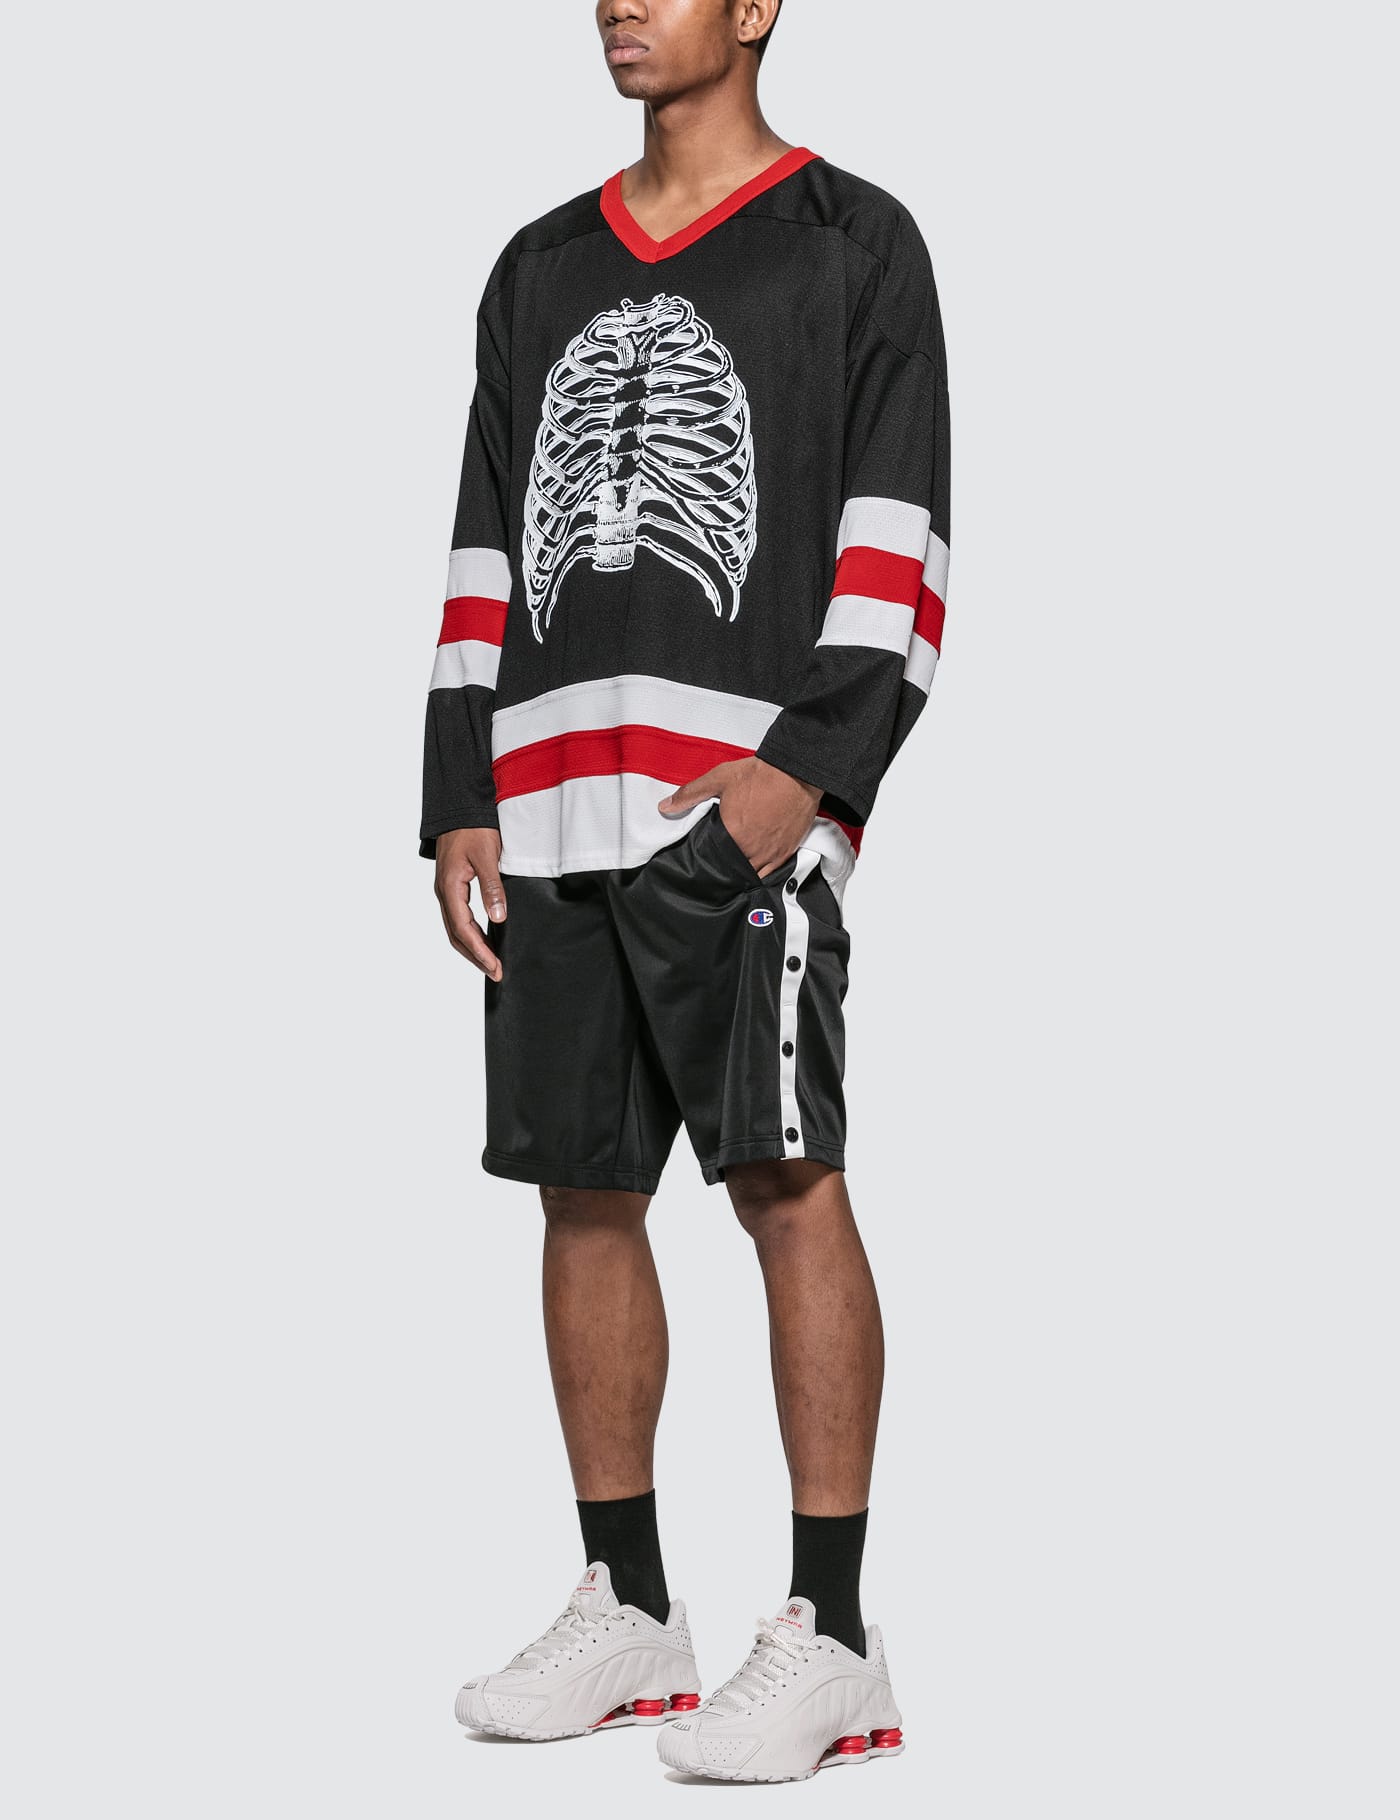 hockey jersey with shorts